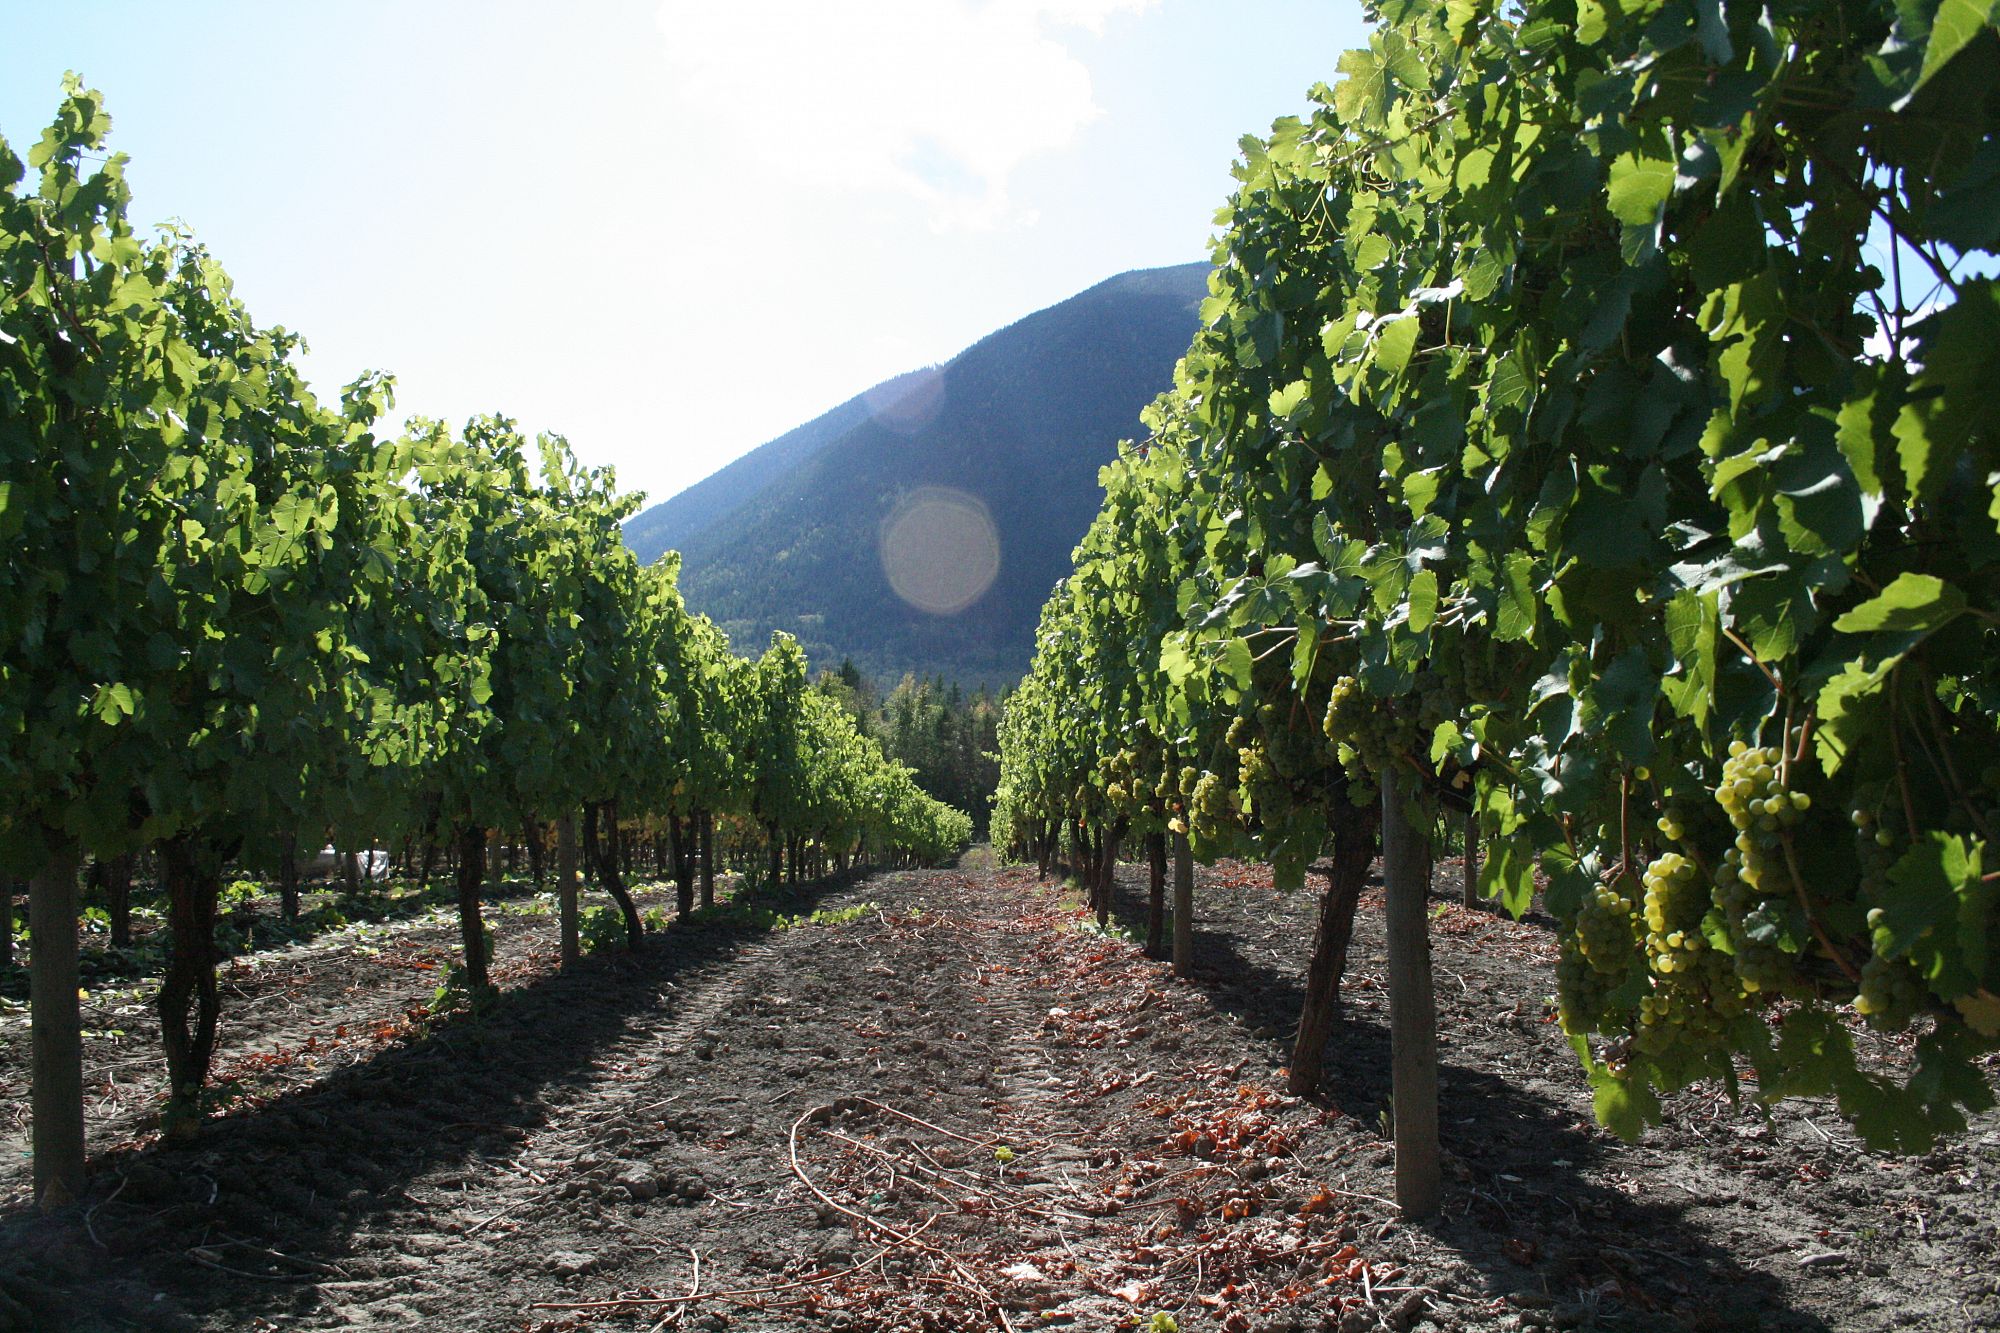 Recline Ridge Vineyards & Winery